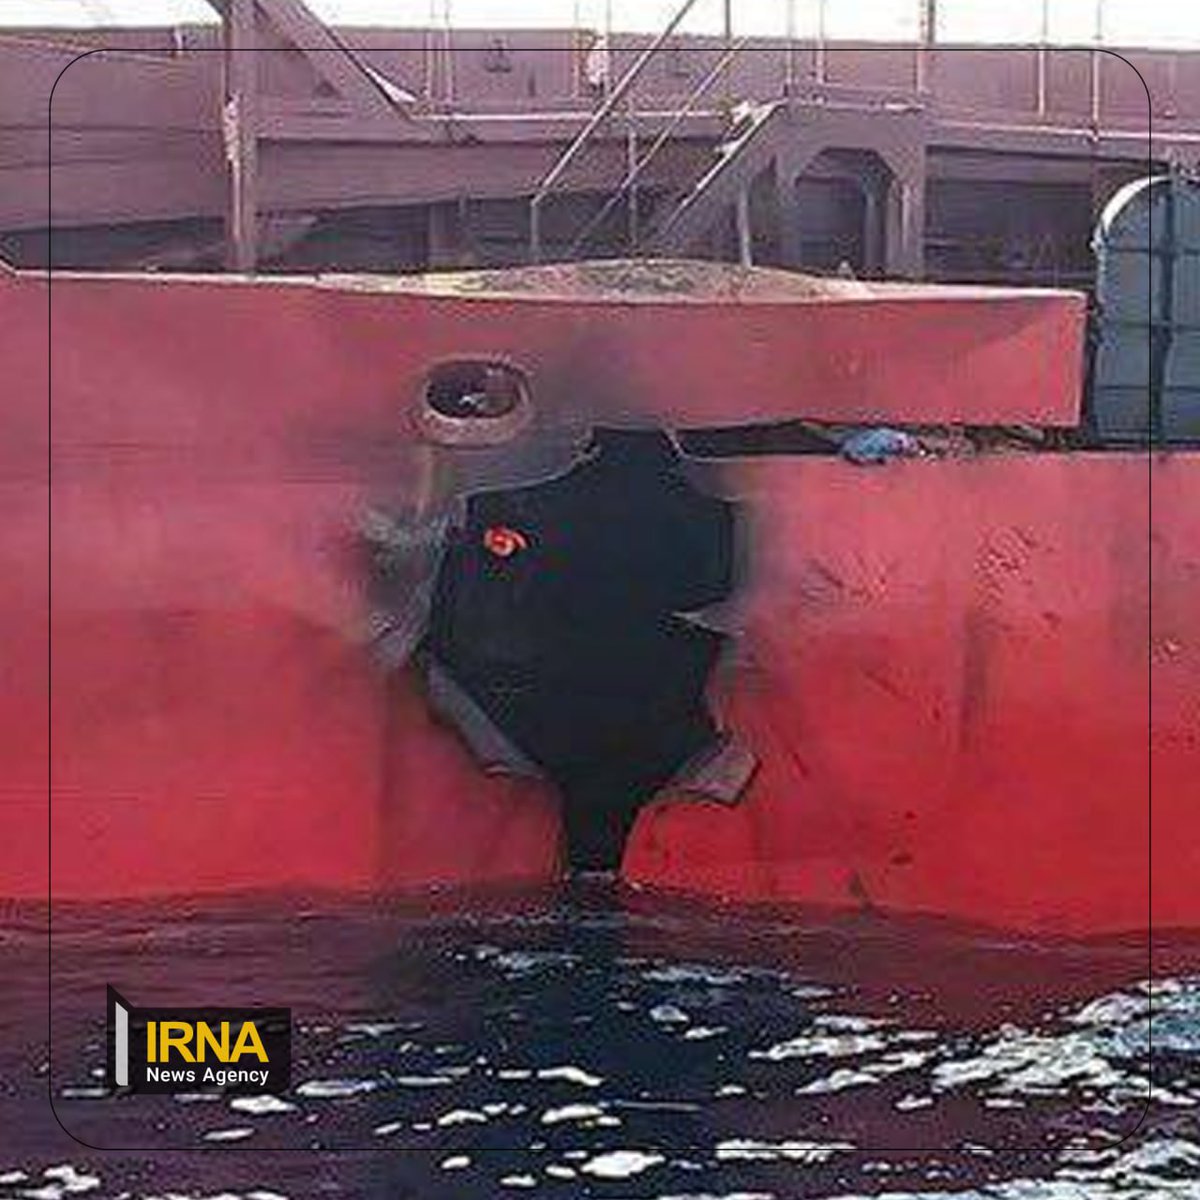 nصور متداولة تظهر مشاهد للسفينة Verbena  الأوكرانية التي استهدفها الحوثيون في خليج عدنn